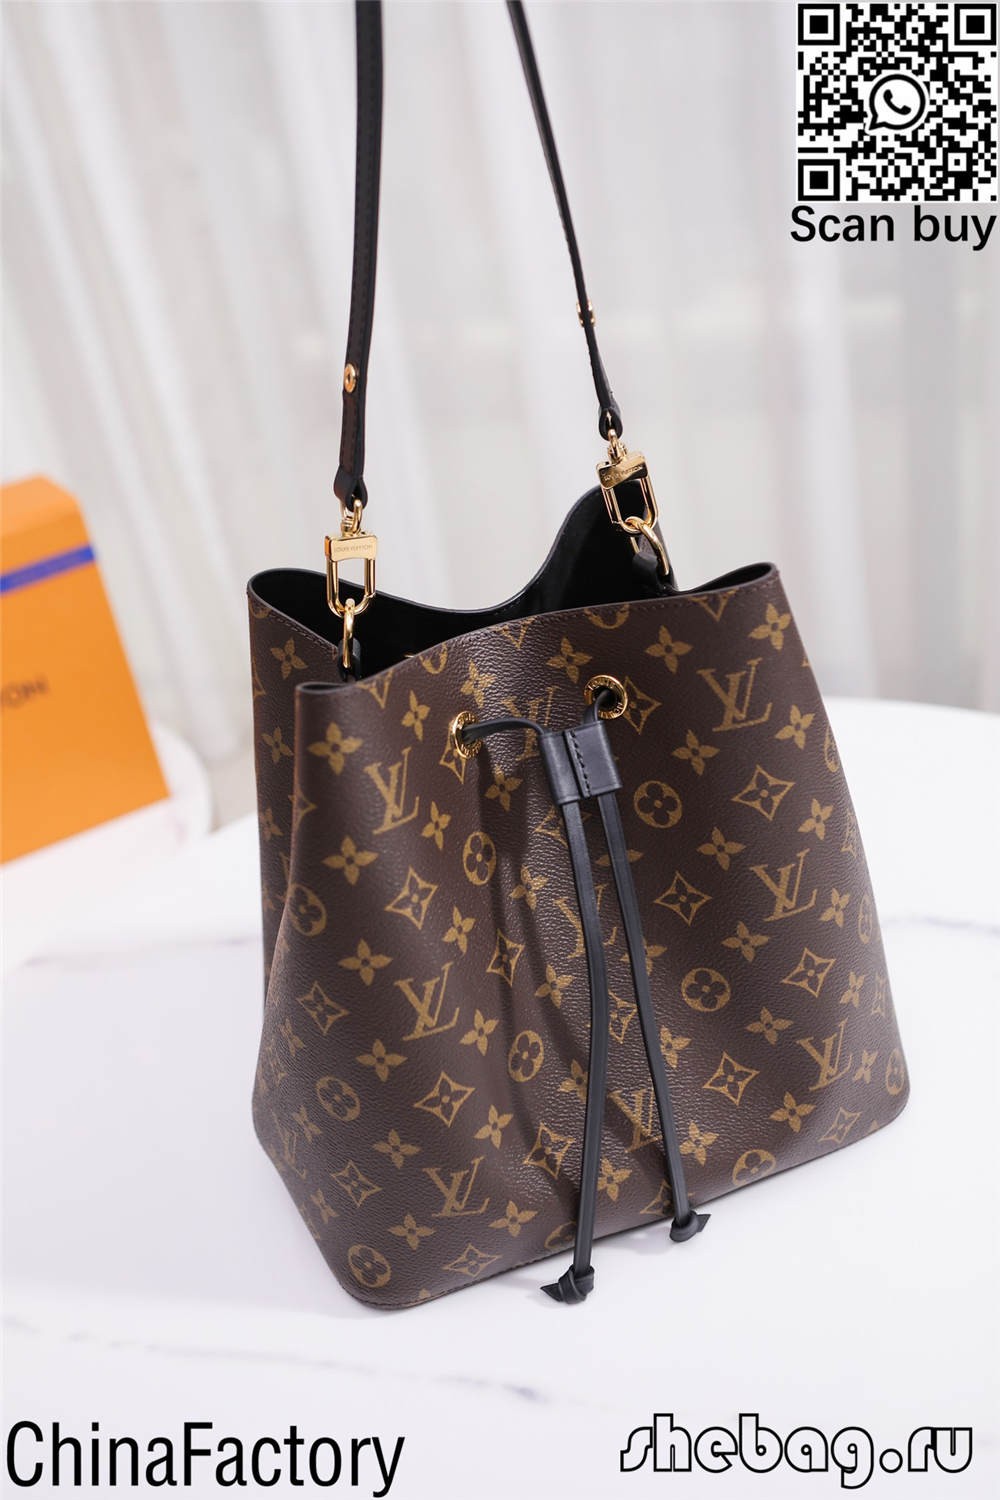 Ιστότοπος πώλησης αντιγράφων τσάντας Black louis vuitton (πιο πρόσφατο 2022)-Καλύτερη ποιότητα Fake Louis Vuitton Ηλεκτρονικό κατάστημα, Replica designer bag ru